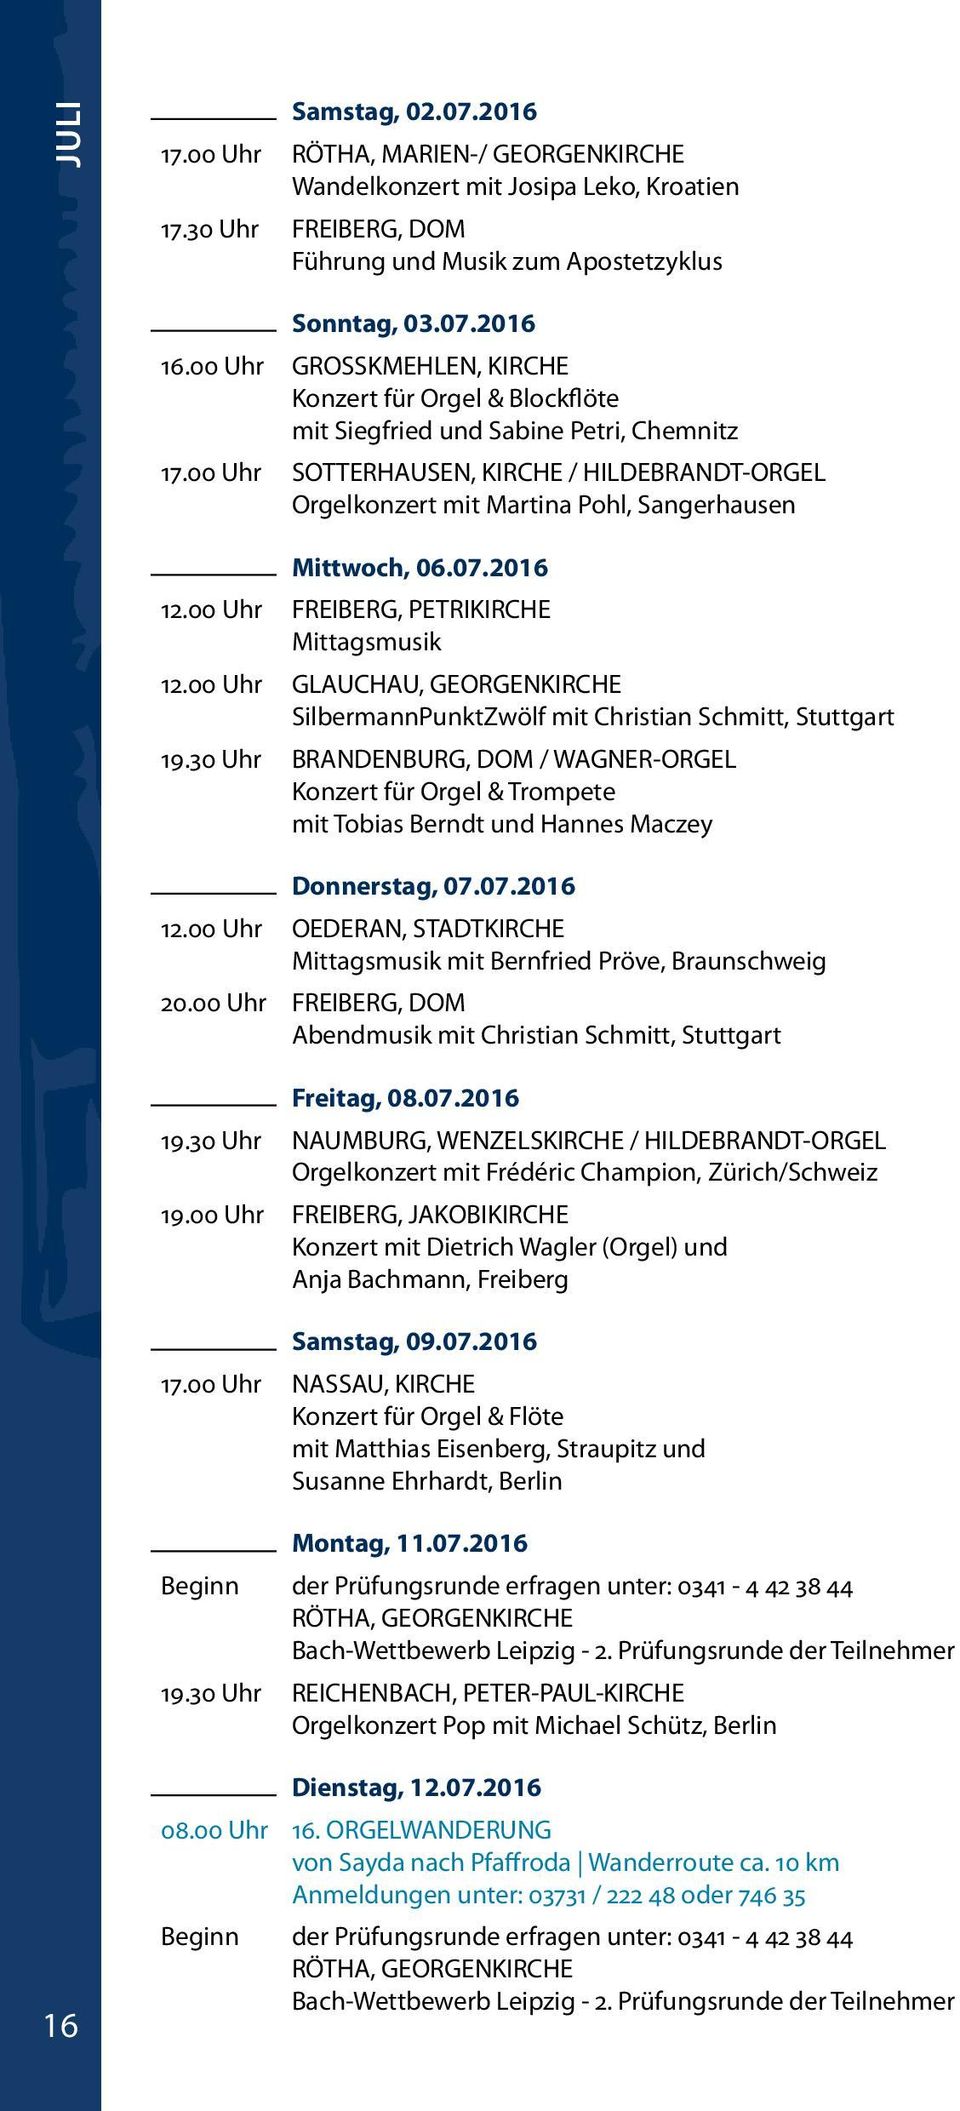 00 Uhr SOTTERHAUSEN, KIRCHE / HILDEBRANDT-ORGEL Orgelkonzert mit Martina Pohl, Sangerhausen Mittwoch, 06.07.2016 Mittagsmusik 12.